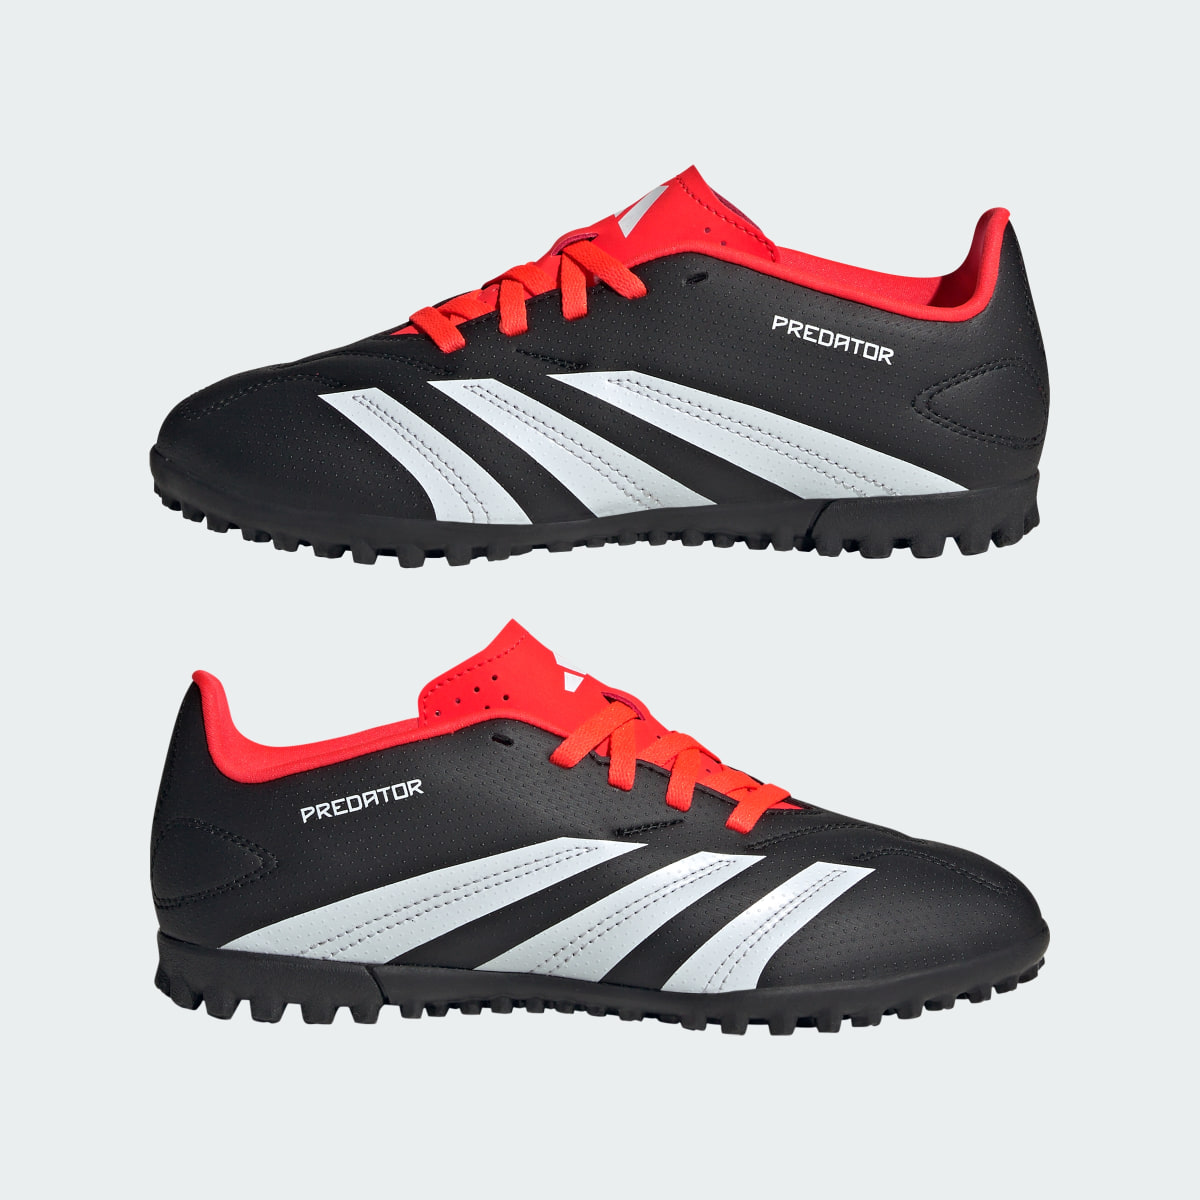 Adidas Predator Club Turf Football Boots. 8